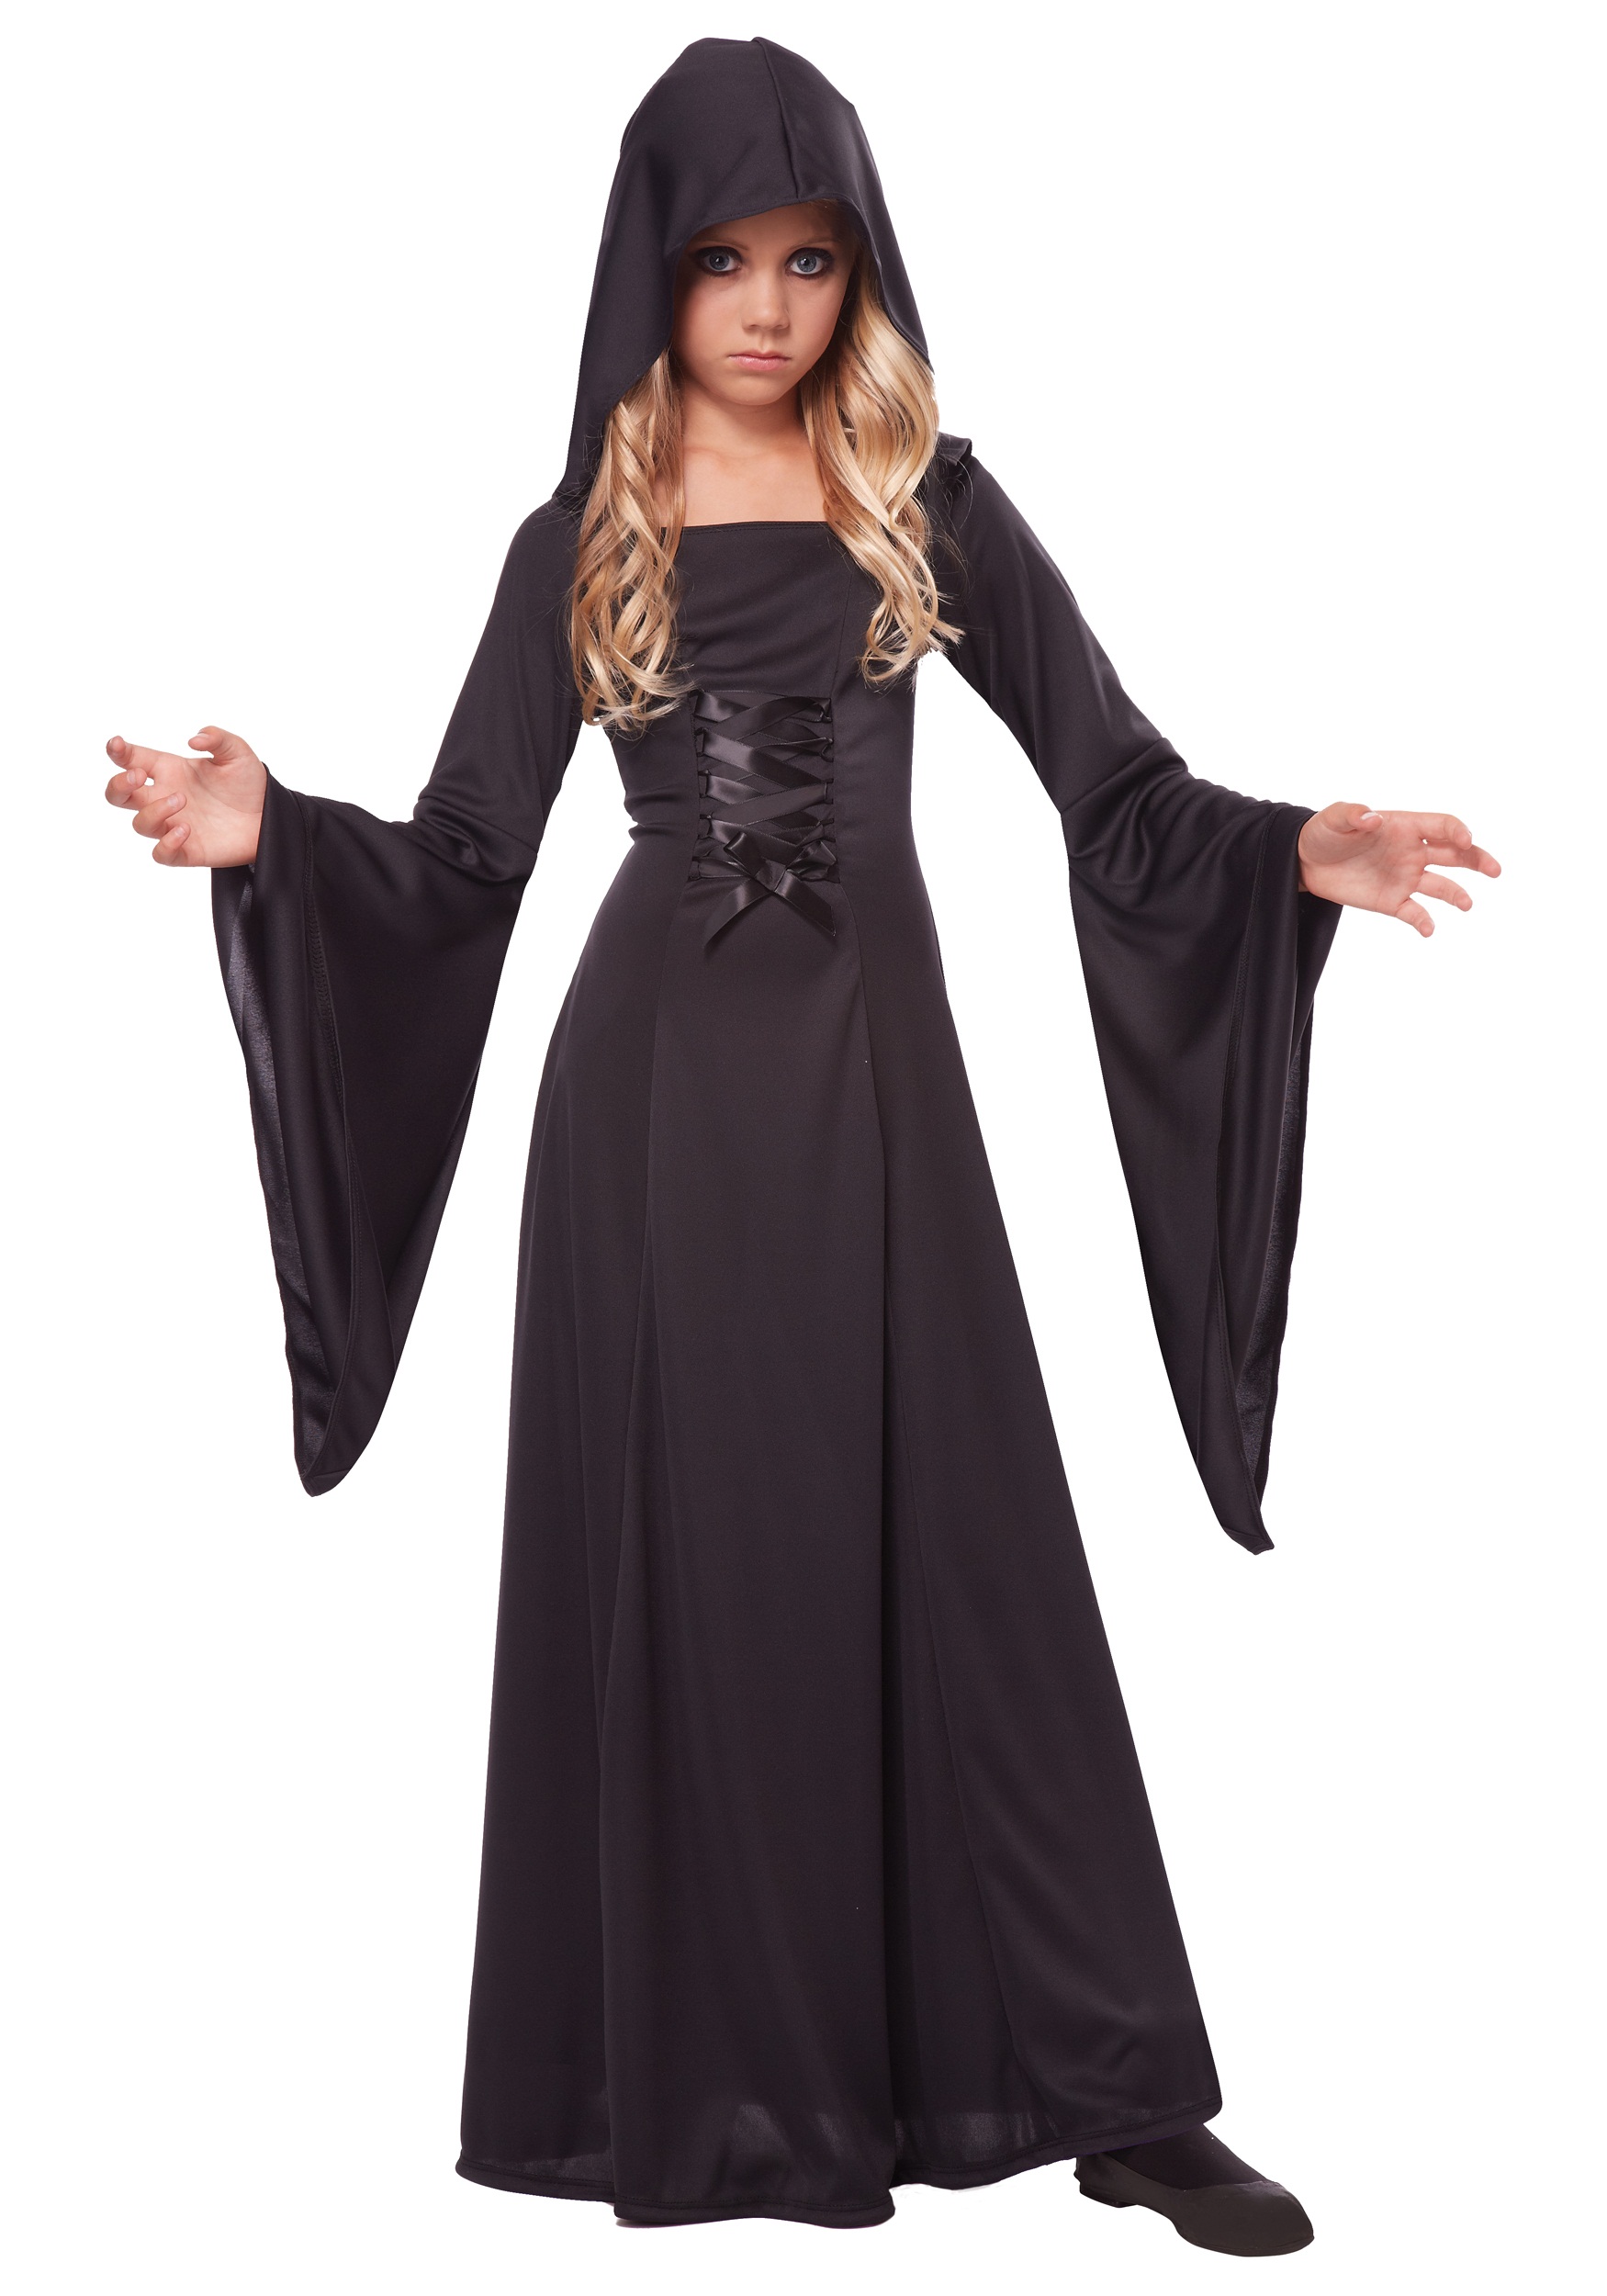 Girl’s Deluxe Black Hooded Robe Costume